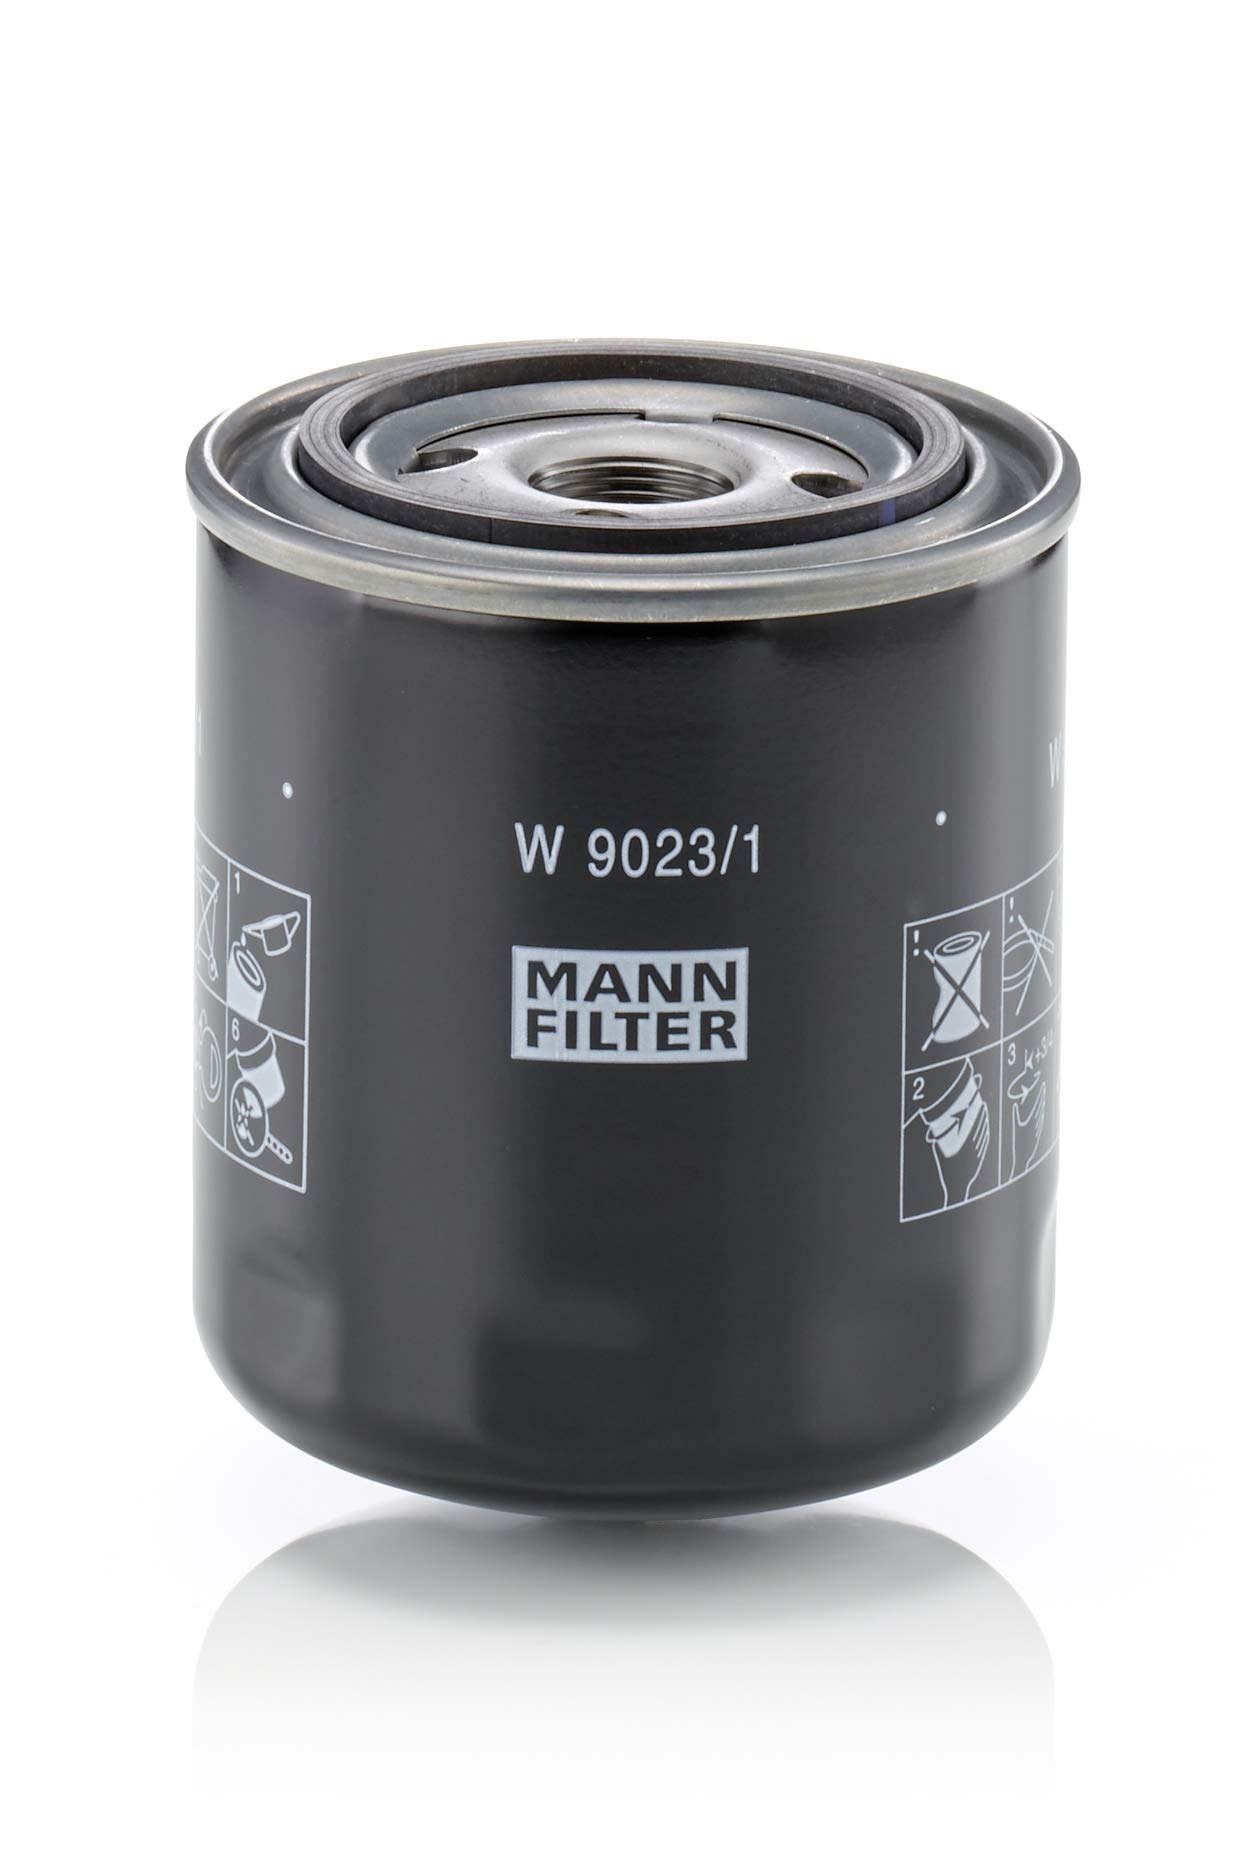 MANN-FILTER W 9023/1 Ölfilter – Getriebefilter – Für PKW und Nutzfahrzeuge von MANN-FILTER